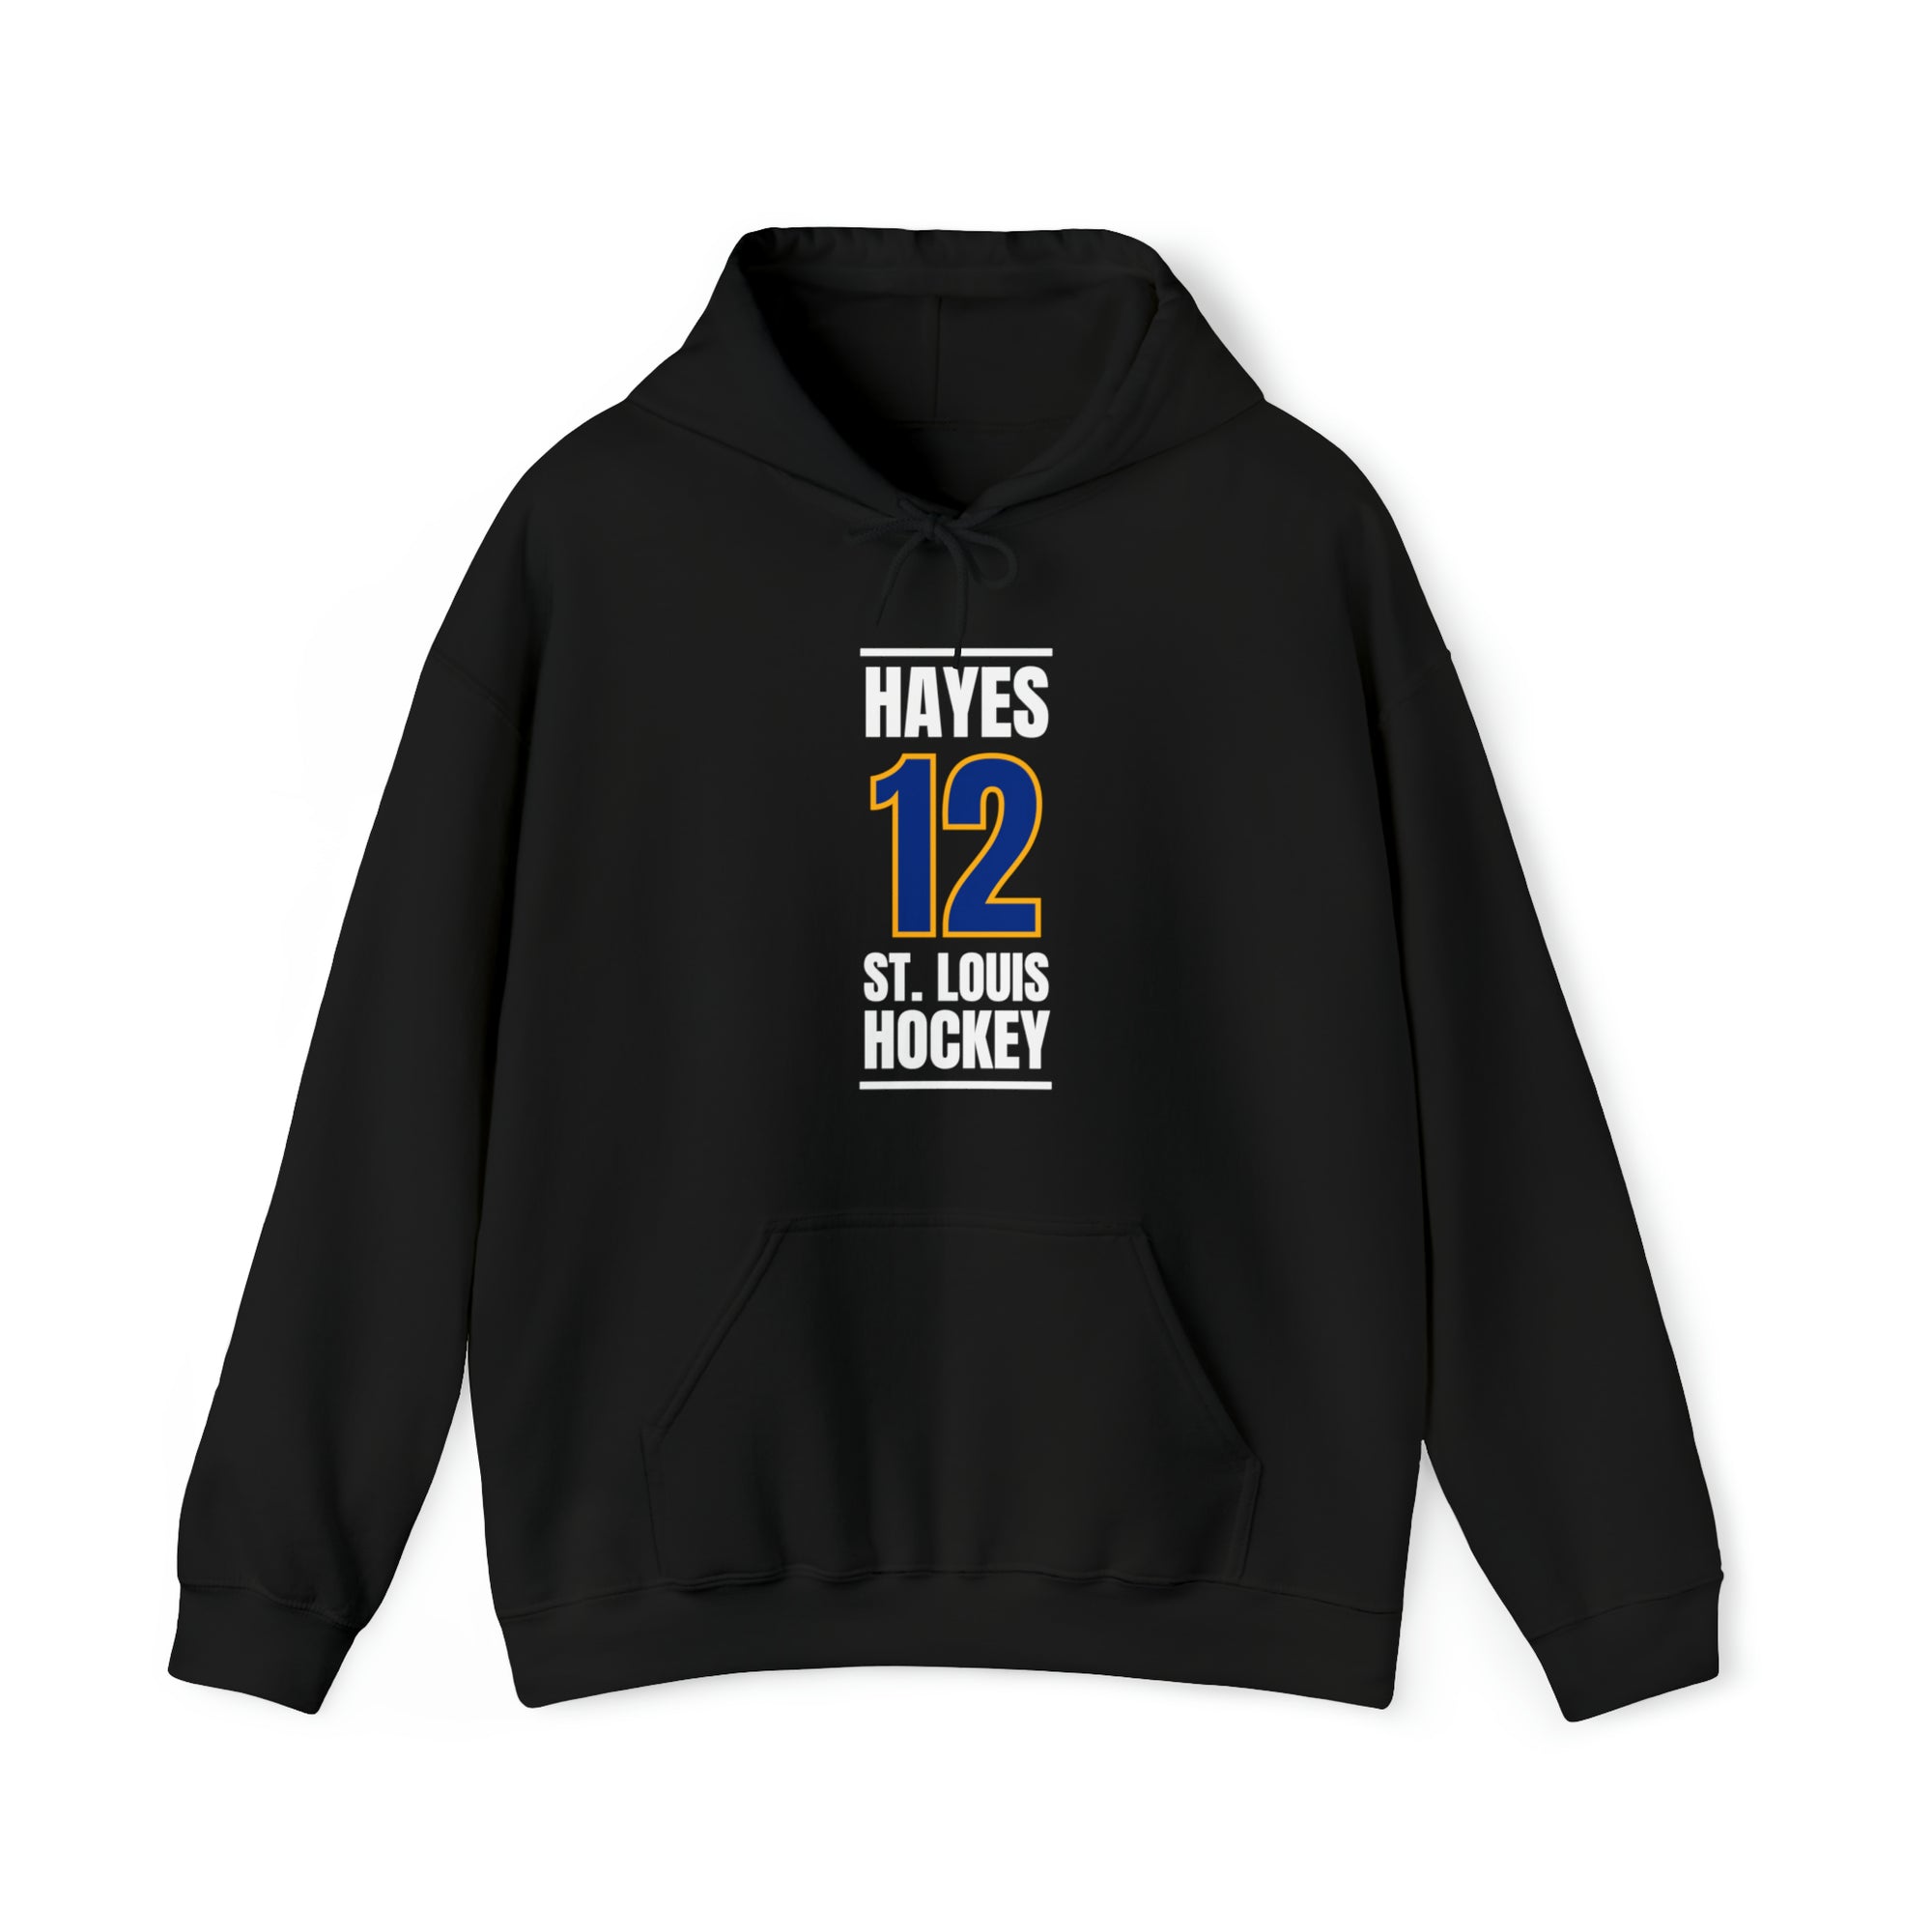 Hayes 12 St. Louis Hockey Blue Vertical Design Unisex Hooded Sweatshirt